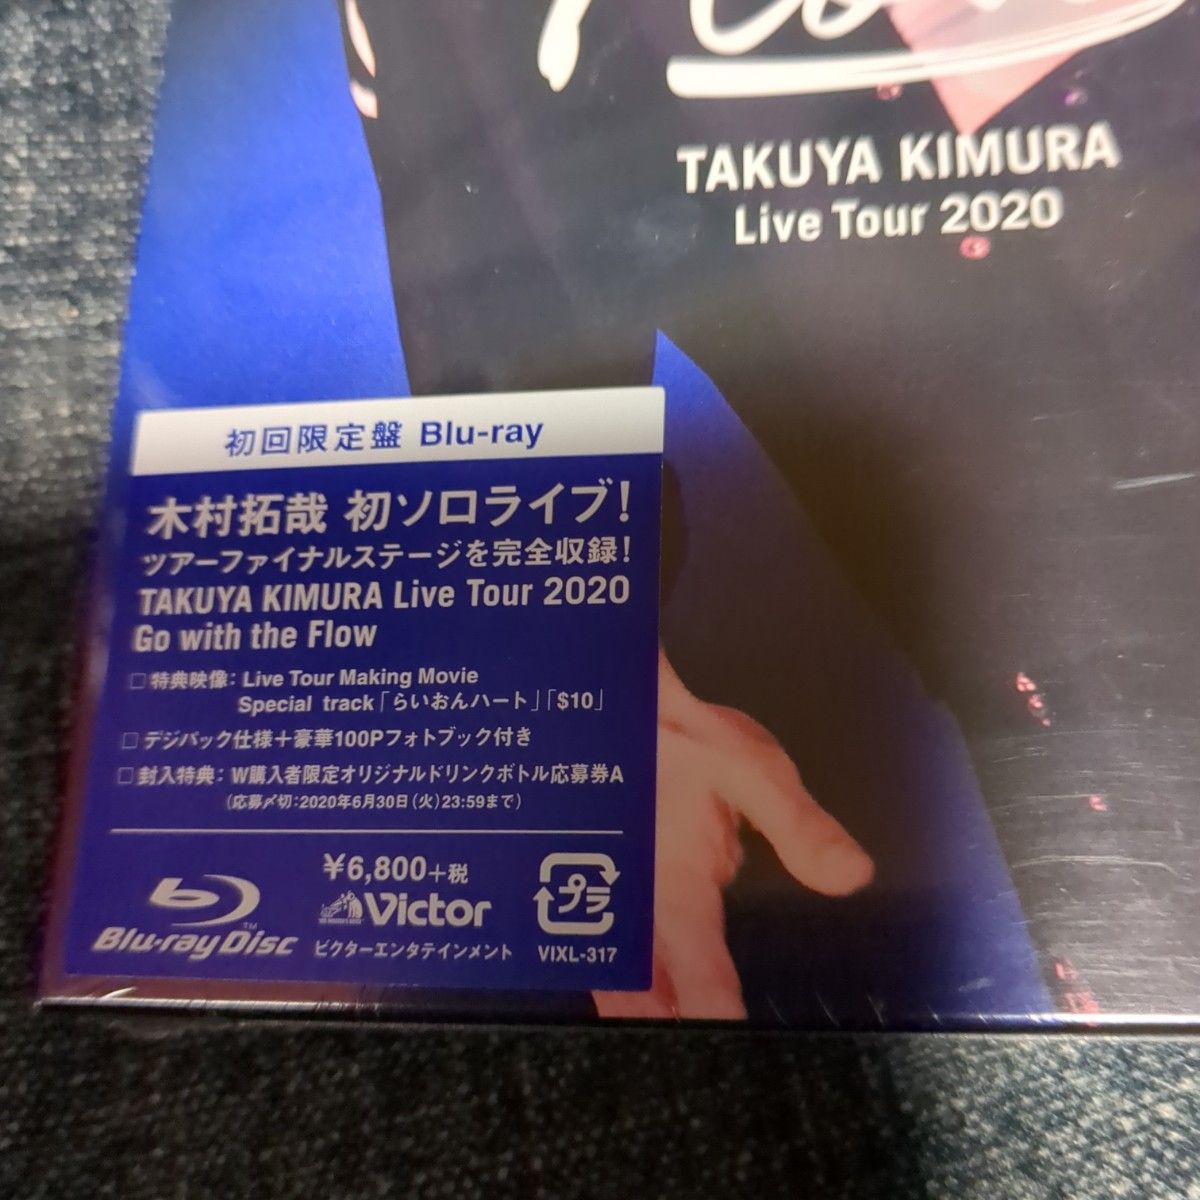 「木村拓哉/TAKUYA KIMURA Live Tour 2020 Go with the Flow〈初回限定盤〉」